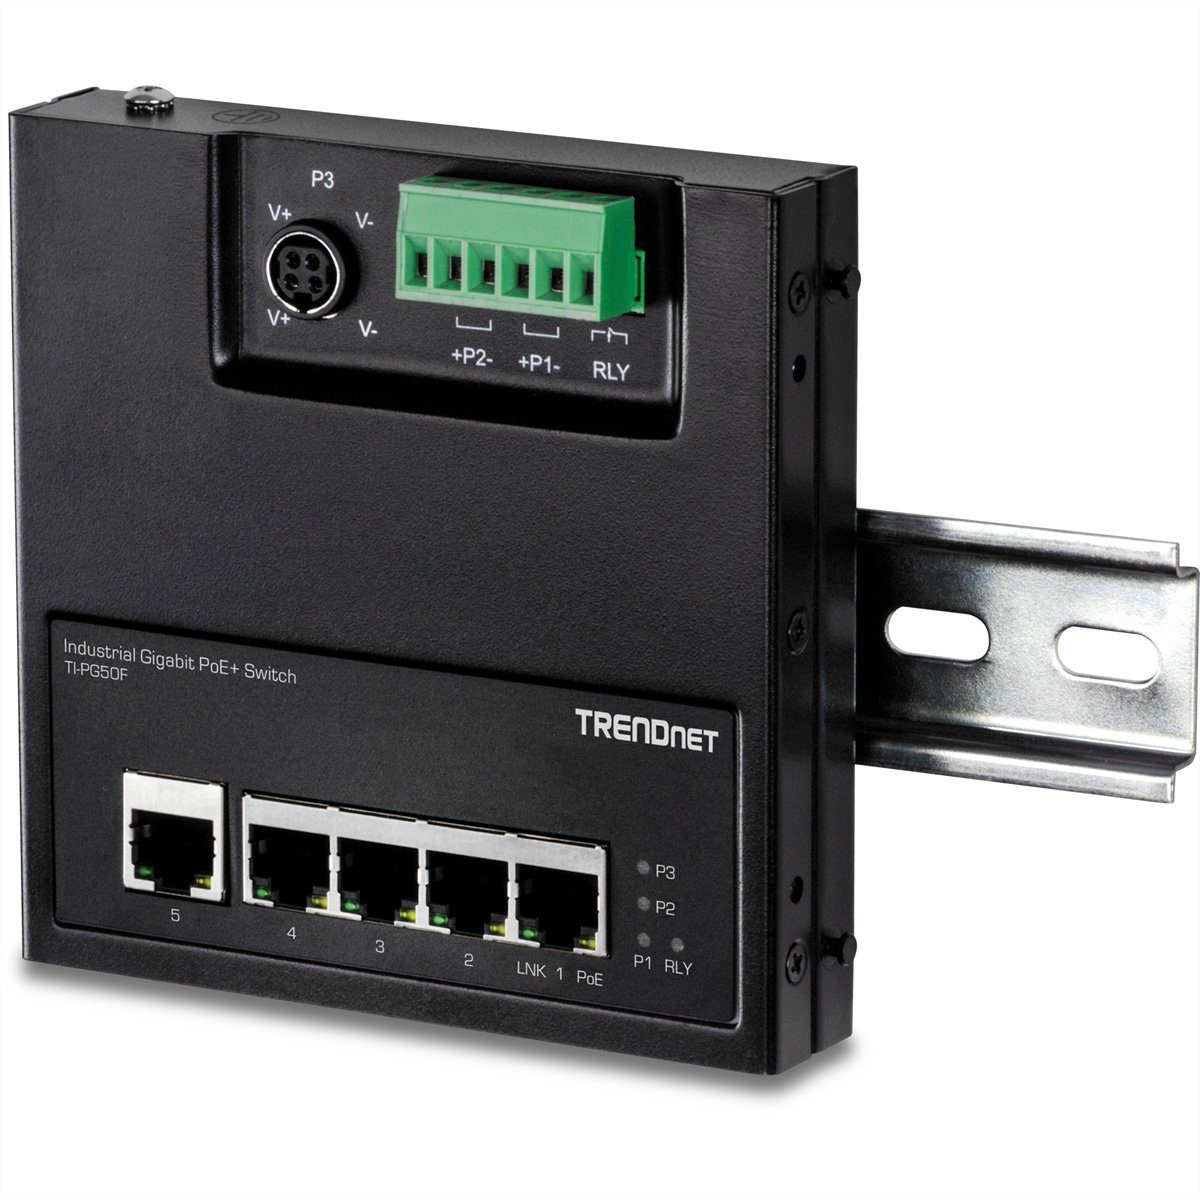 TI-PG50F (wandmontierbar) Trendnet PoE+ Access Industrial Front 5-Port Switch Netzwerk-Switch Gigabit